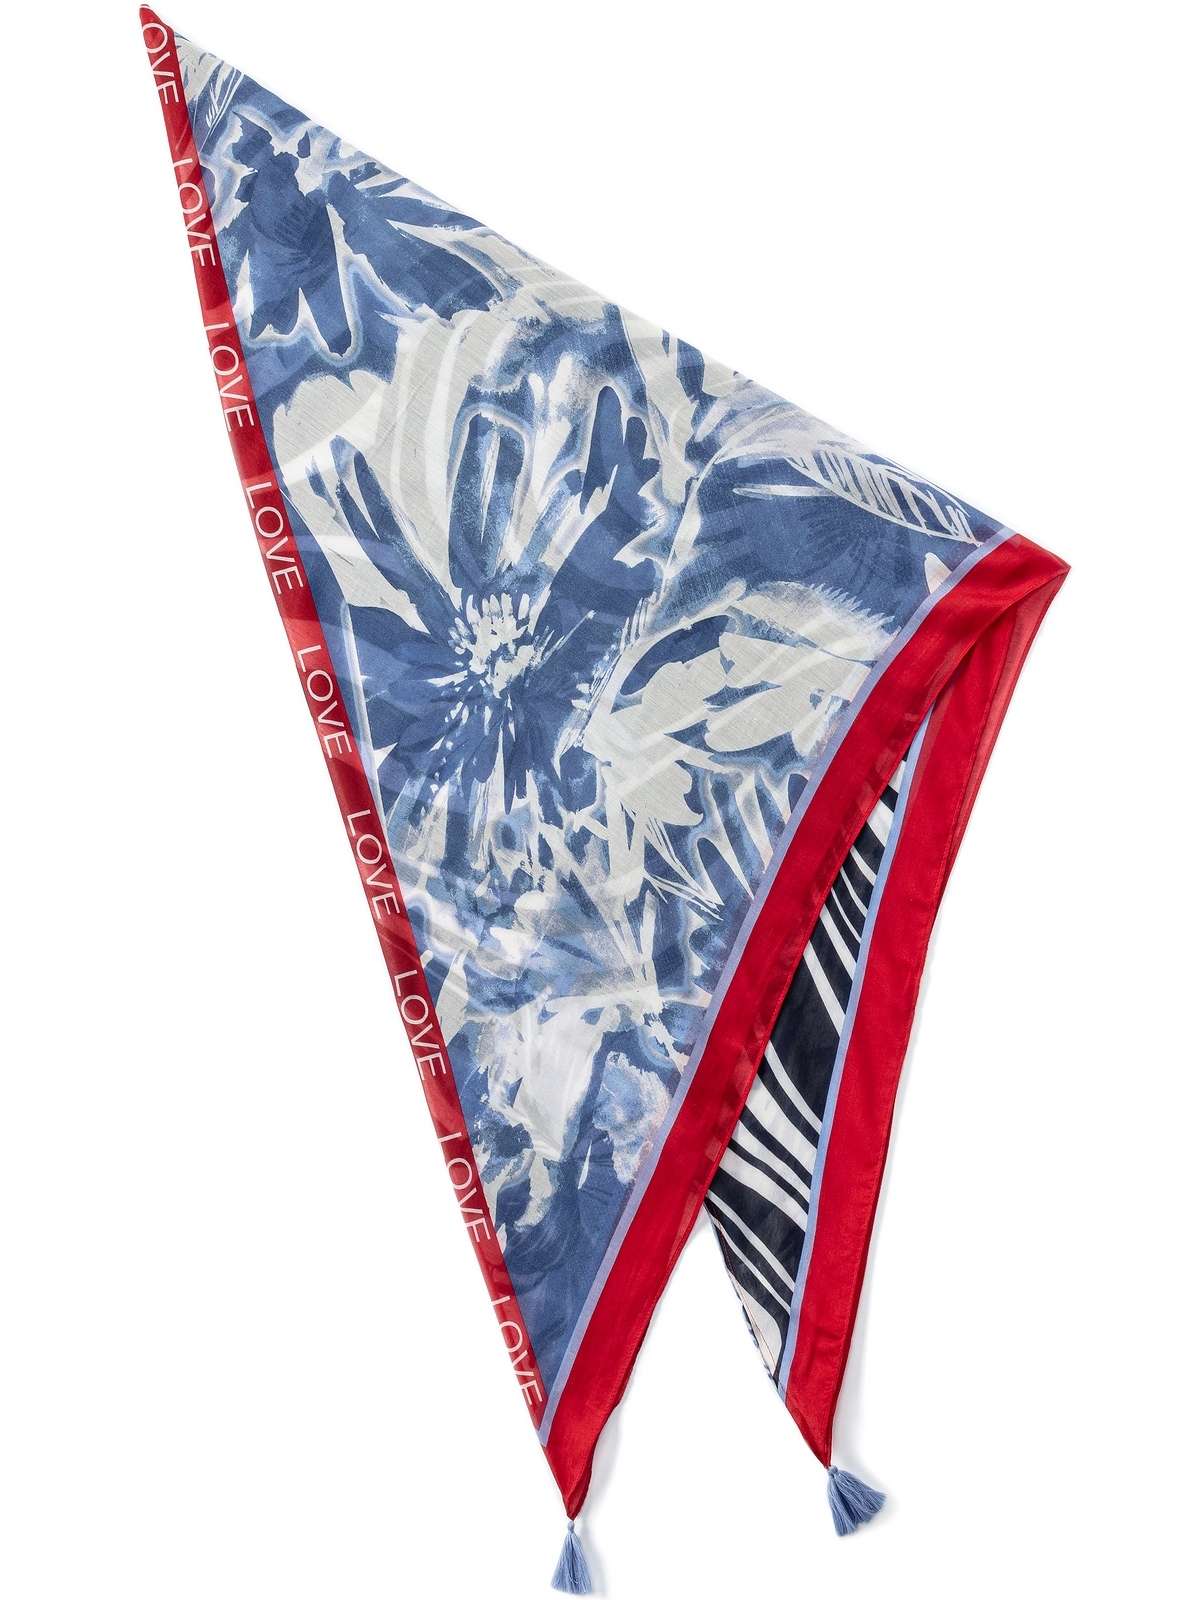 Модный шарф треугольной формы с кисточками.